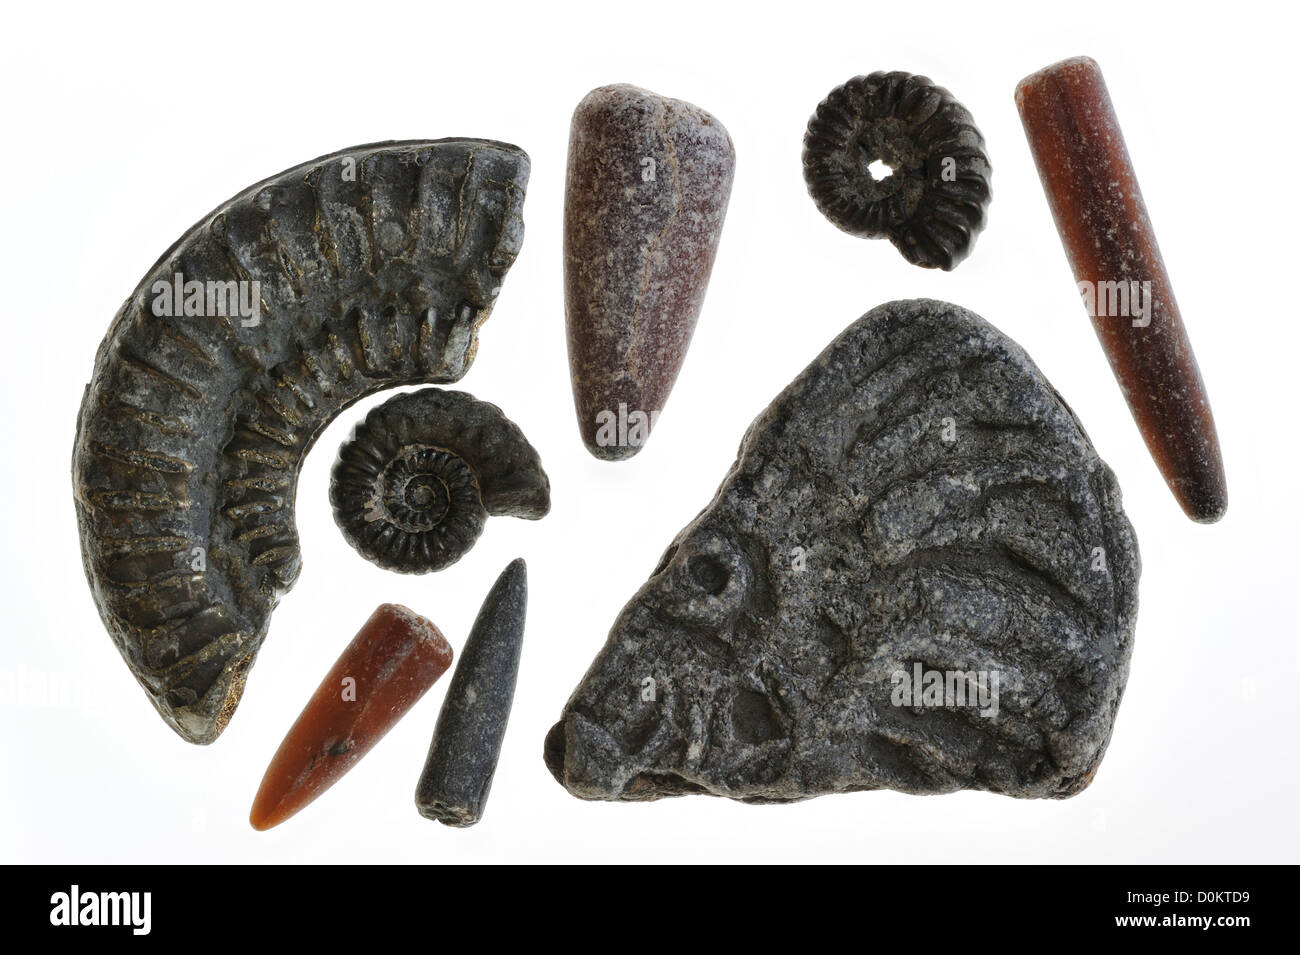 Collezione di fossili come guardie di fossili di belemnites e ammoniti da Lyme Regis, Jurassic Coast, Dorset, Sud Inghilterra, Regno Unito Foto Stock